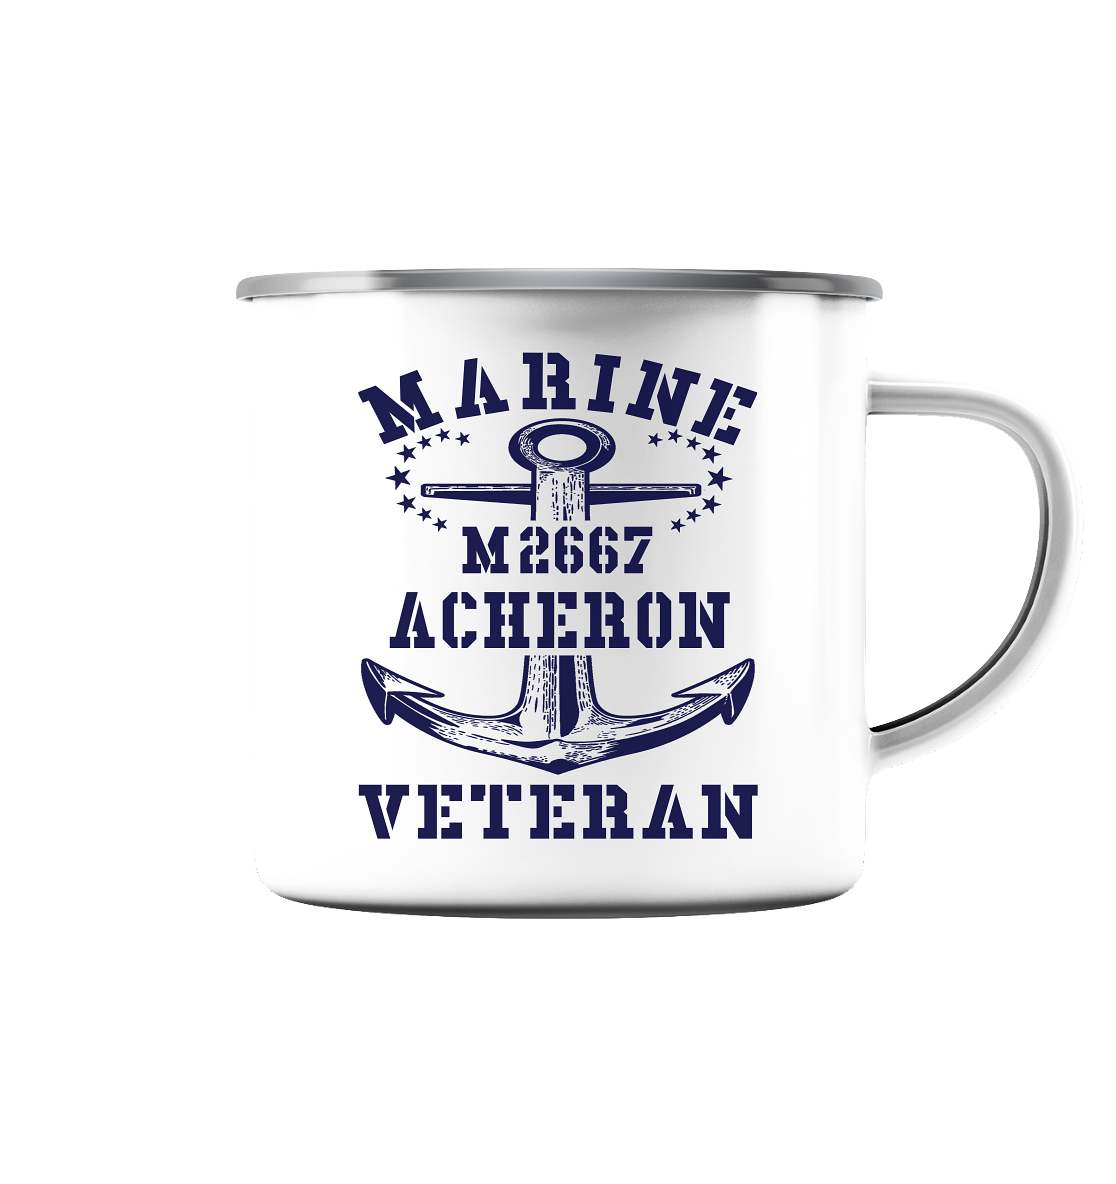 BiMi M2667 ACHERON Marine Veteran - Emaille Tasse (Silber)